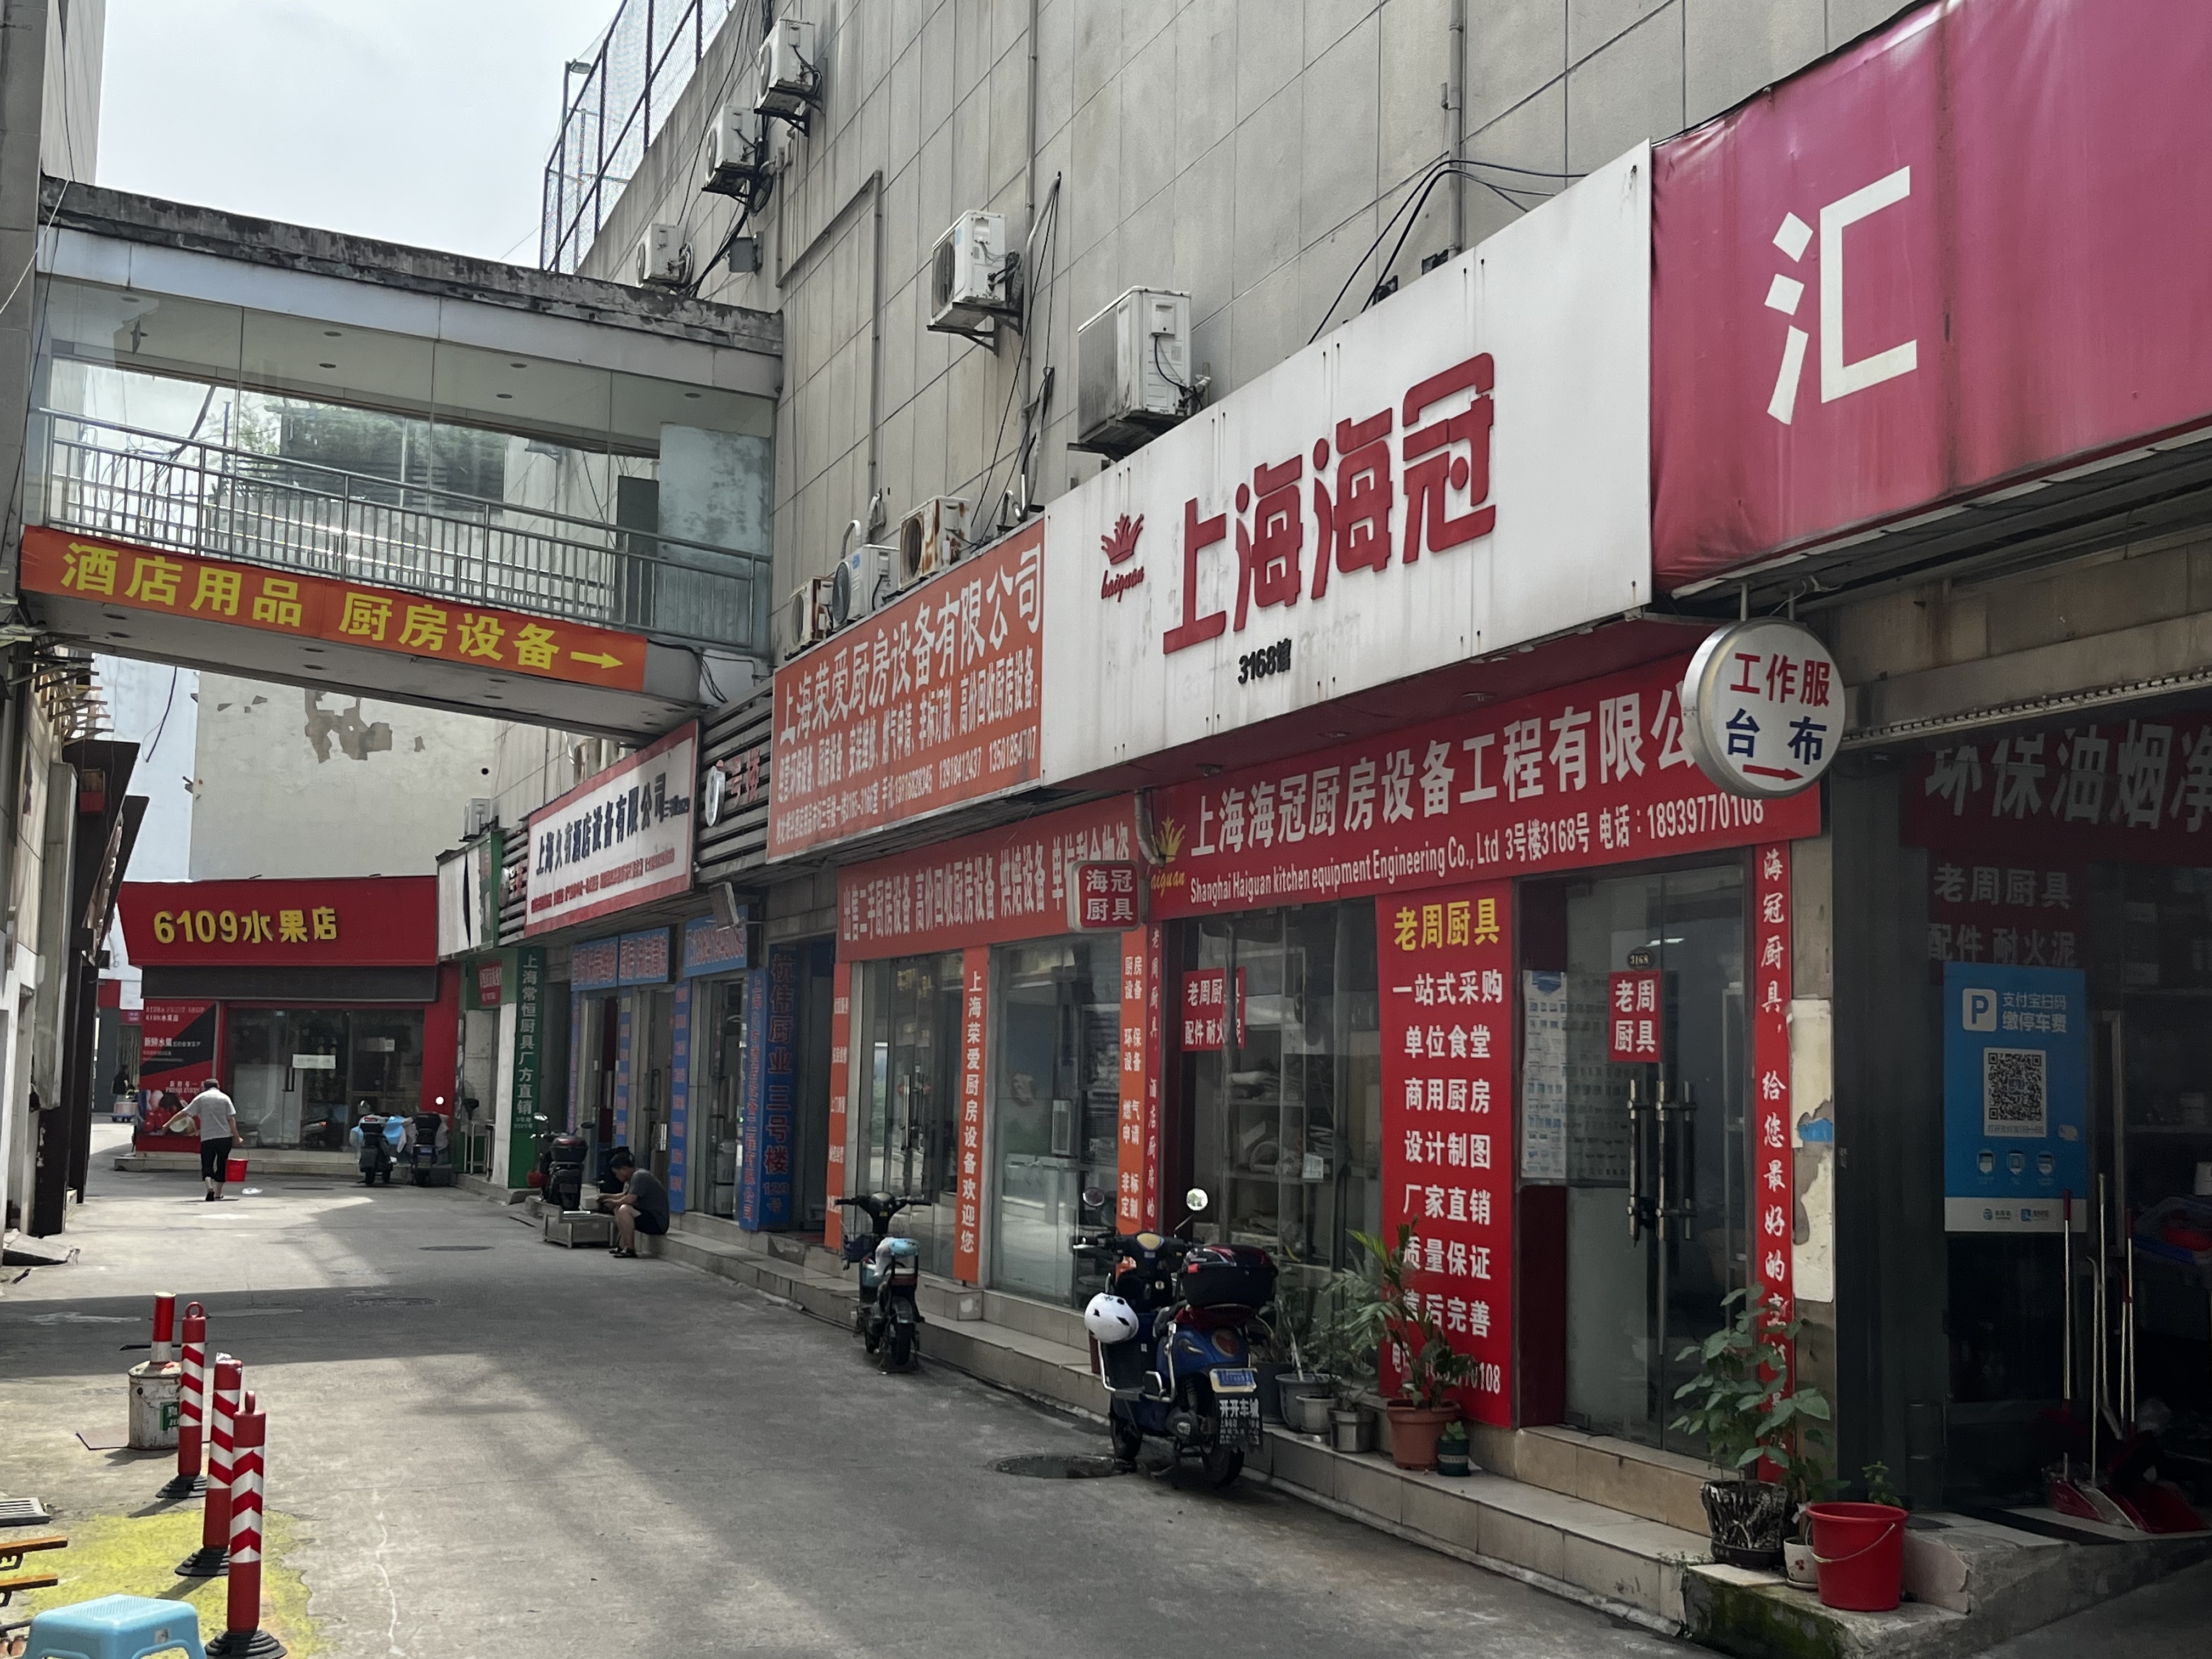 静安区共和新路的帝芙特茶文化广场有多家集中售卖厨房设备的店铺。